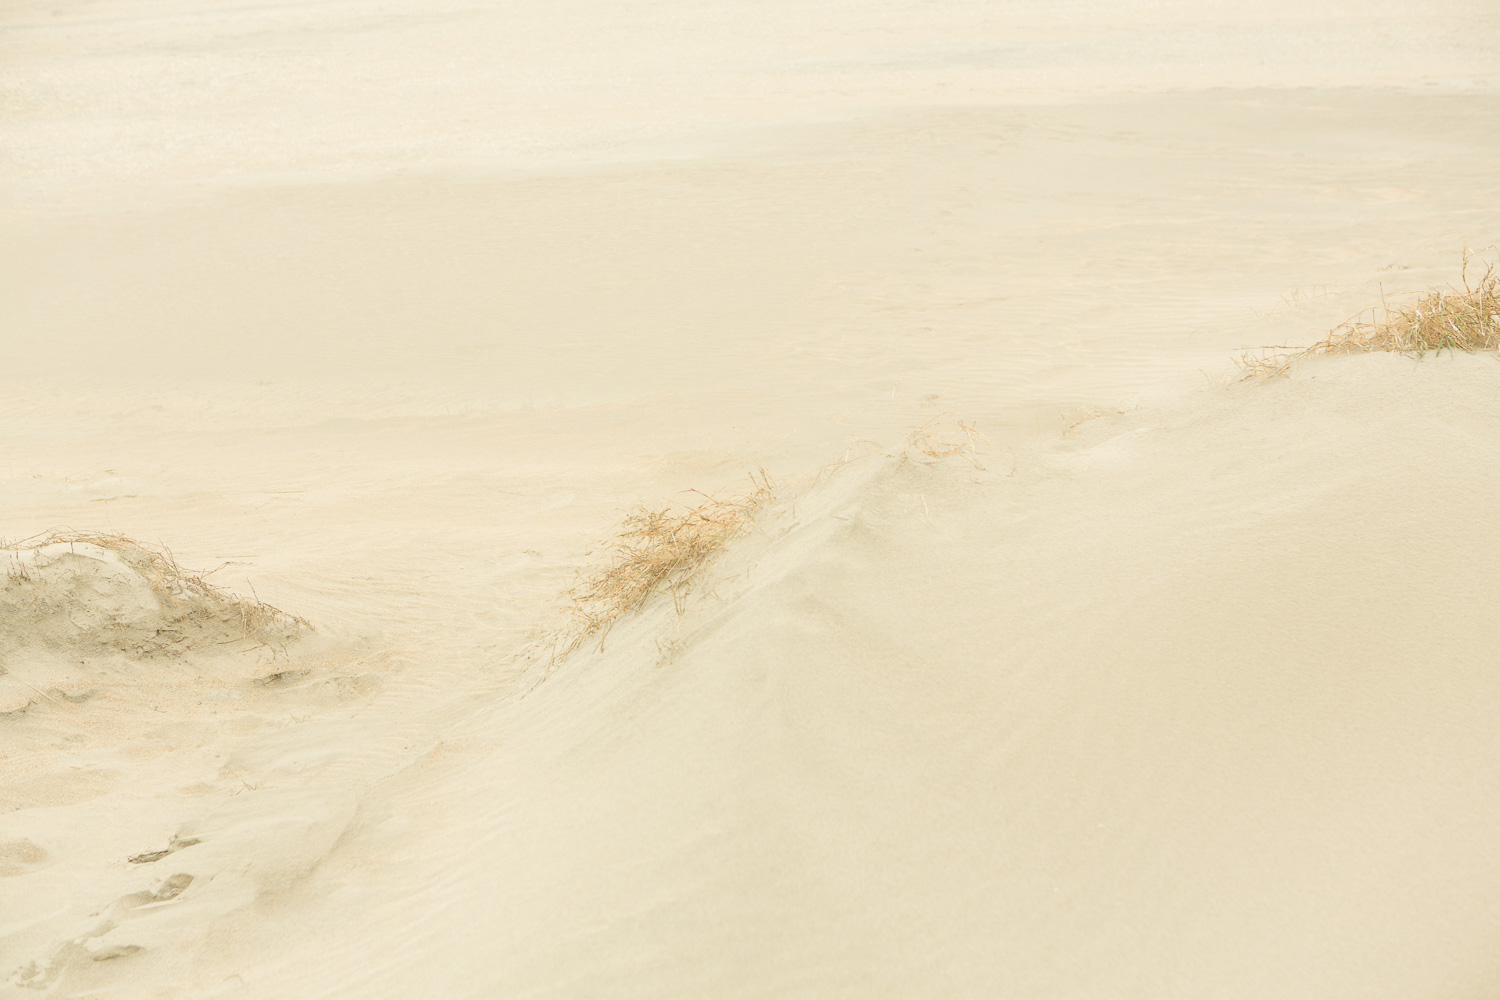  Dunes VI, 2016 //  120 x 180 cm  